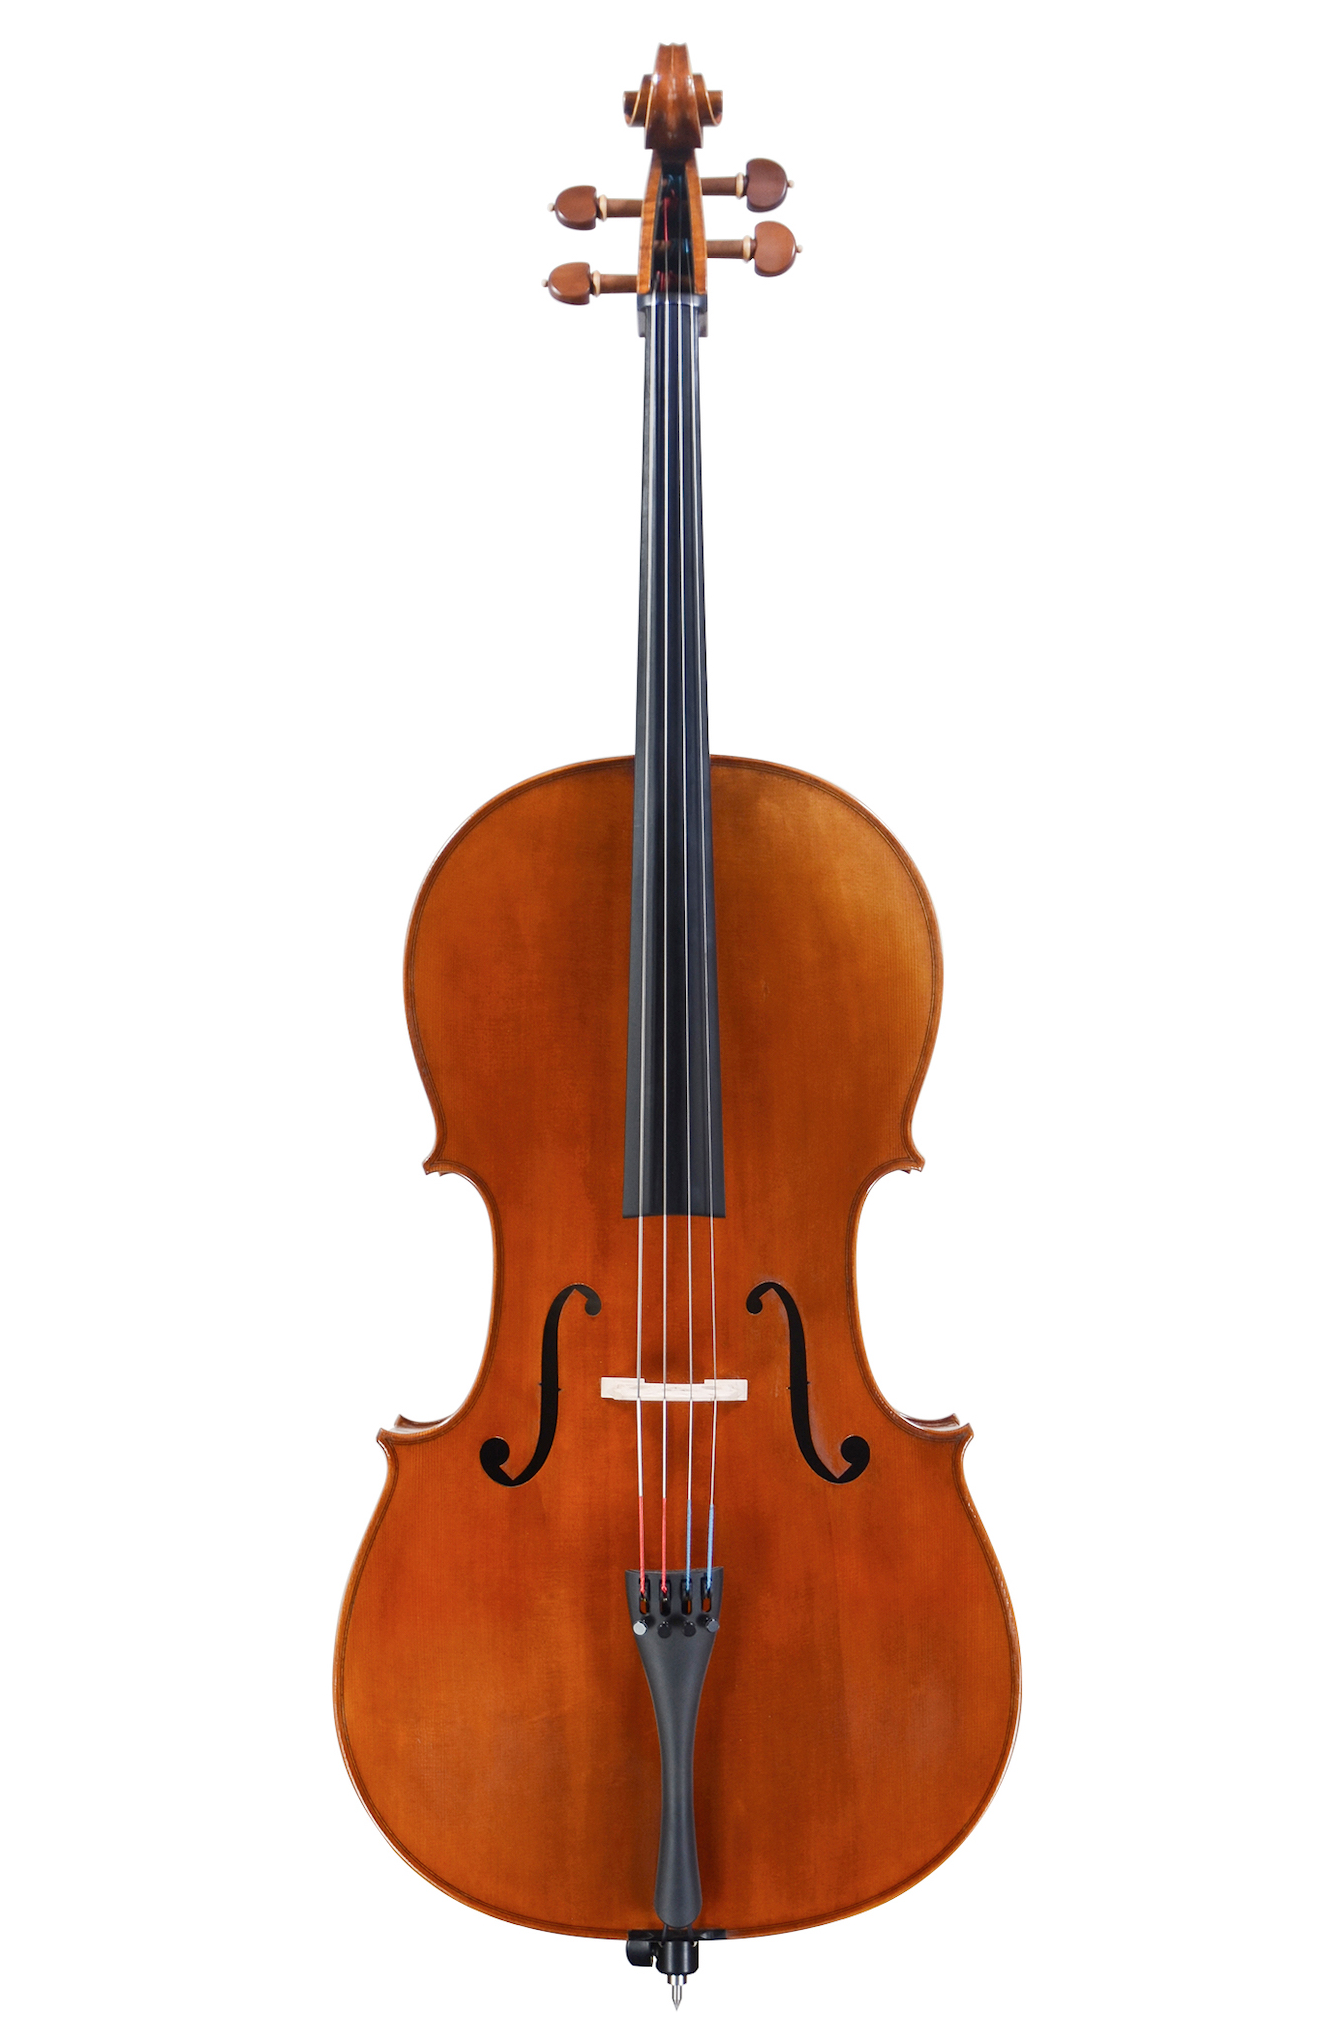 ピグマリウス 分数バイオリン 1/2 - 弦楽器、ギター